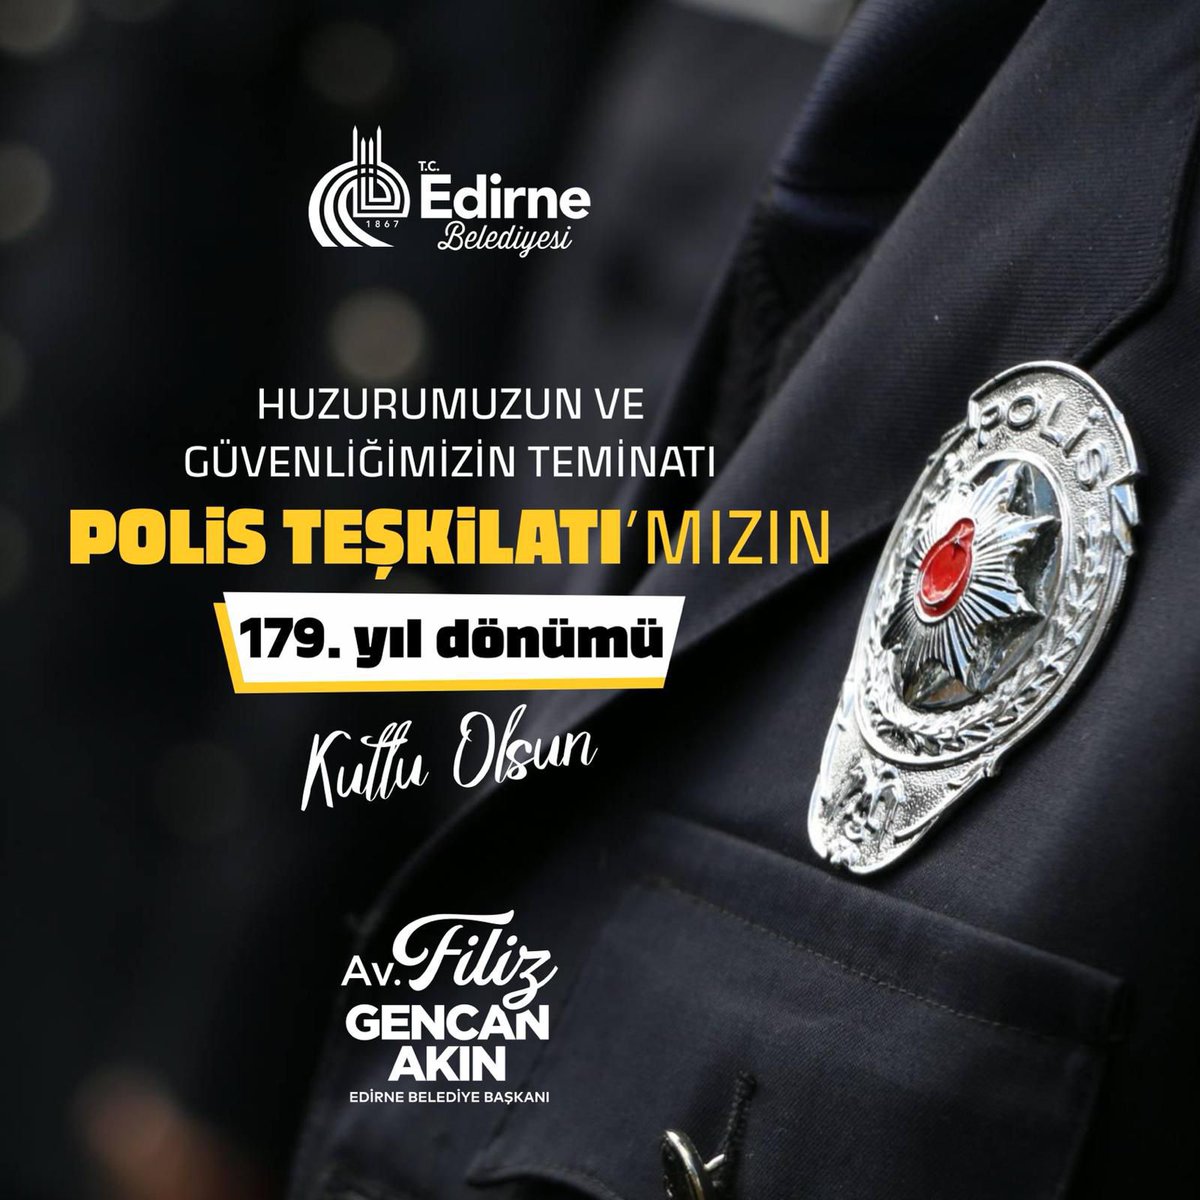 Türk Polis Teşkilatımız 179 Yaşında 🇹🇷 Huzur ve güvenliğimizin teminatı Türk Polis Teşkilatı’mızın 179. kuruluş yıl dönümü kutlu olsun. Bu vesileyle görevi başında şehit düşen tüm polislerimizi rahmetle anıyor; gazilerimize şükranlarımı sunuyorum. Daha nice 179 yıllara…